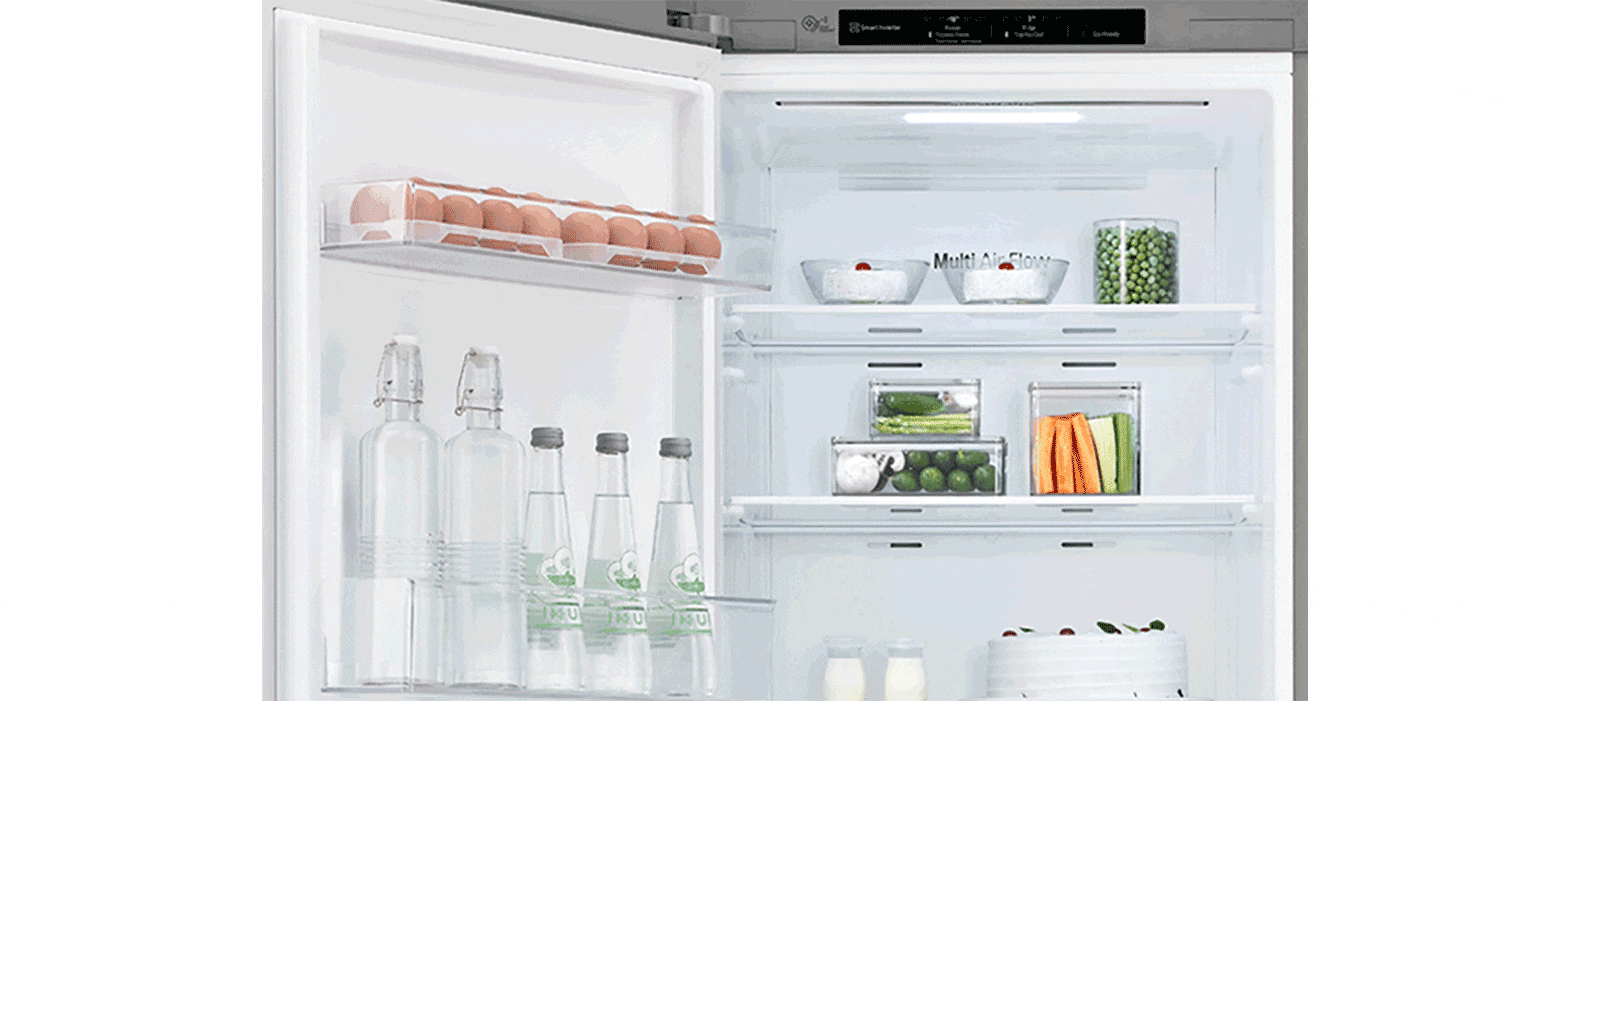 Хладилникът е показан с отворена вратата отляво, вместо по-често срещаната дясна, за да се покаже, че може да се персонализира.